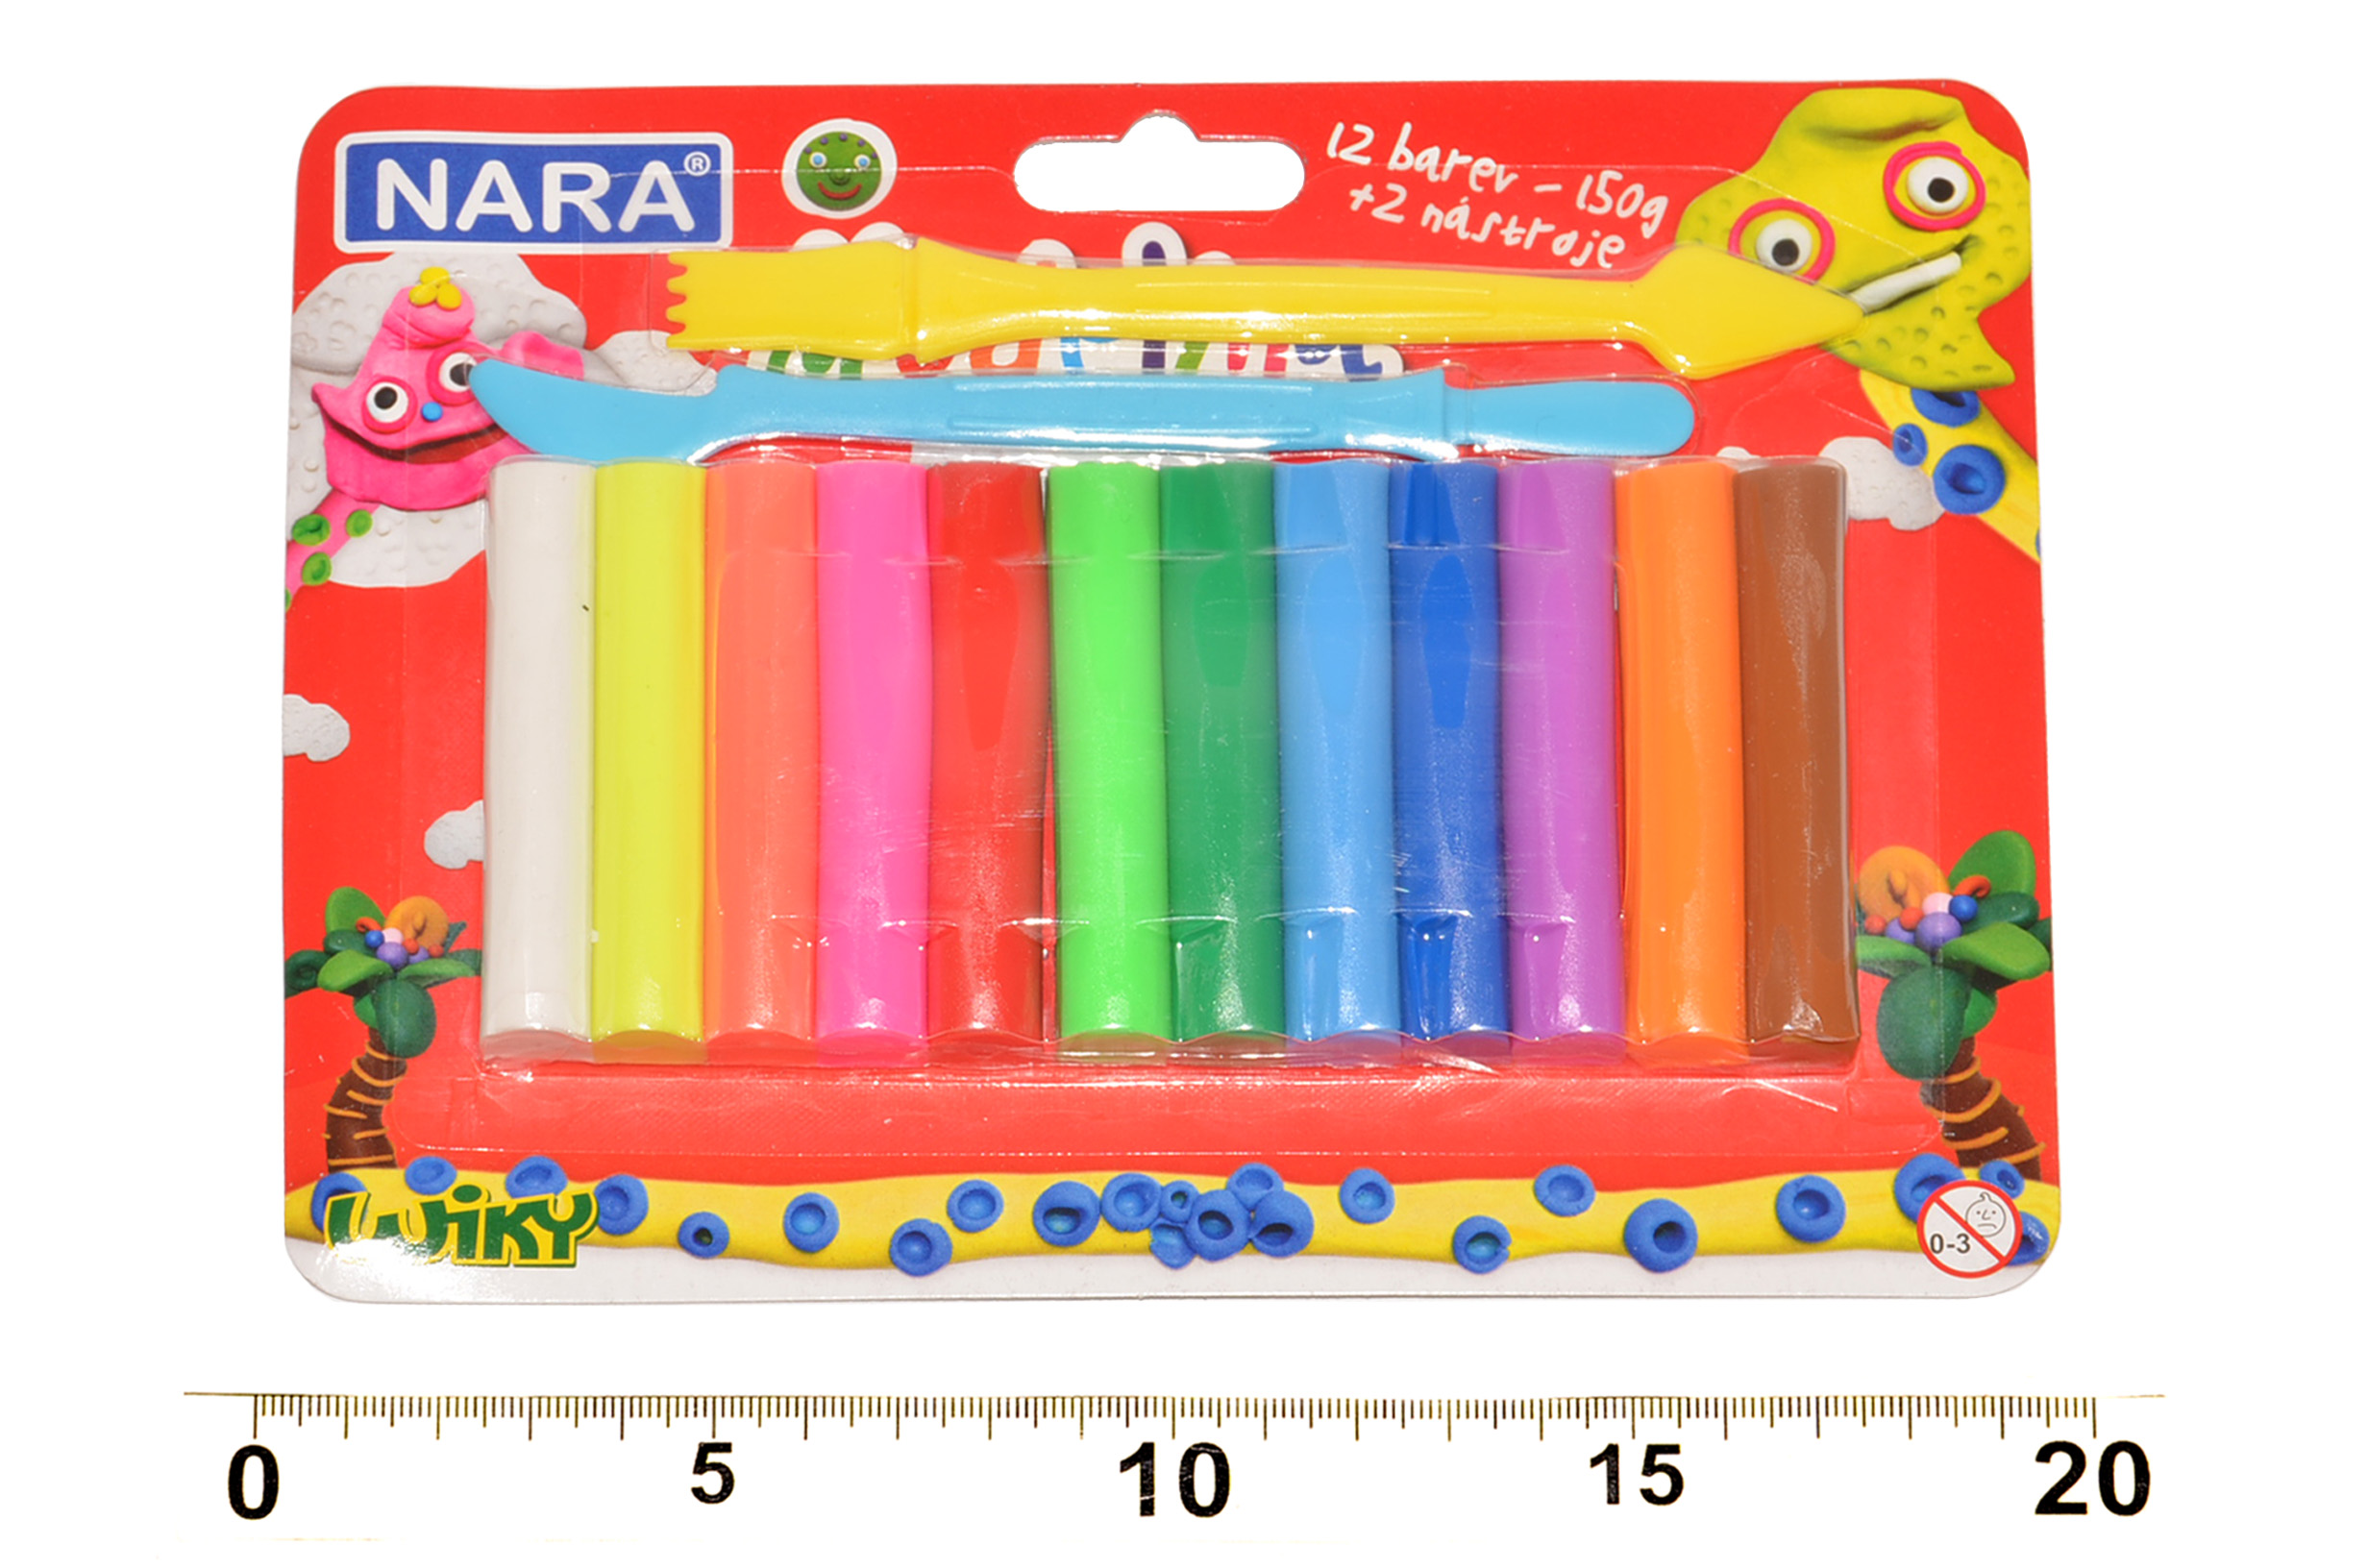 Modelína Nara 12 barev 150g + nářadí